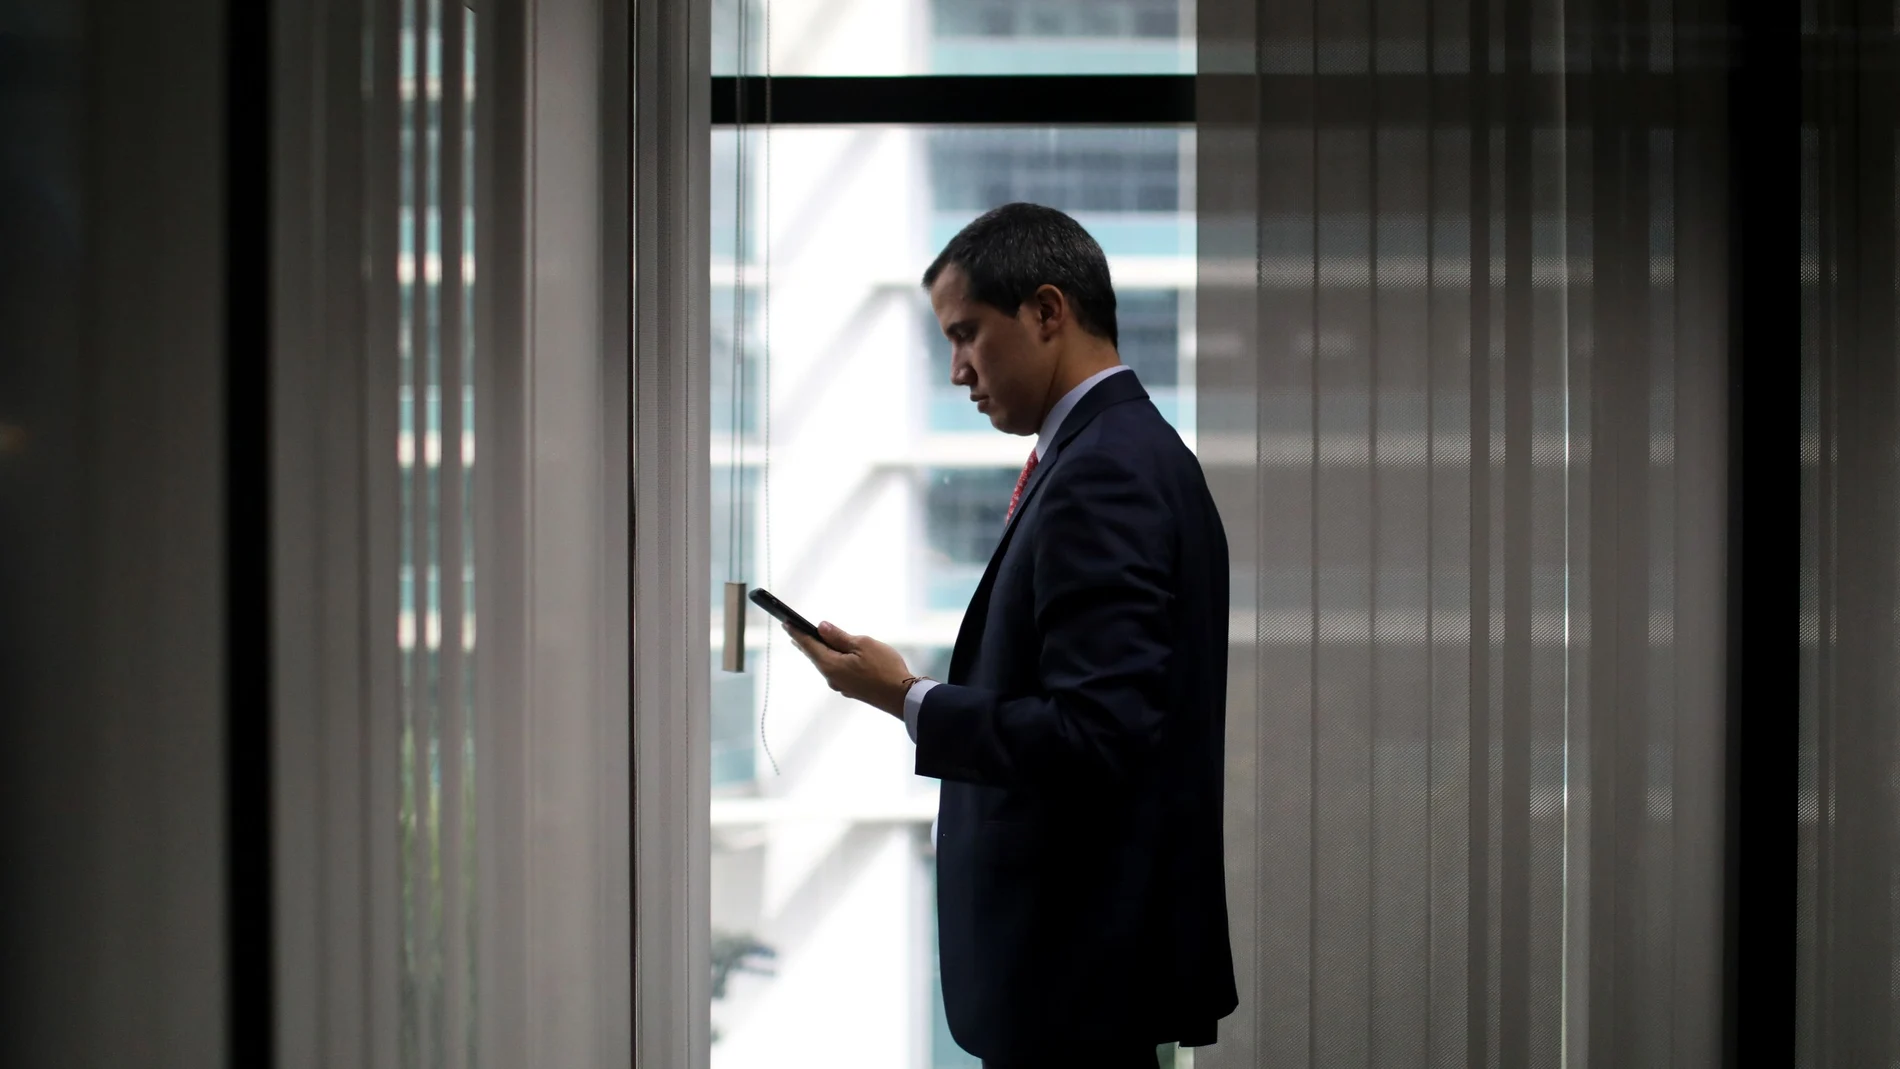 El presidente encargado de Venezuela, Juan Guaidó, consultando su móvil